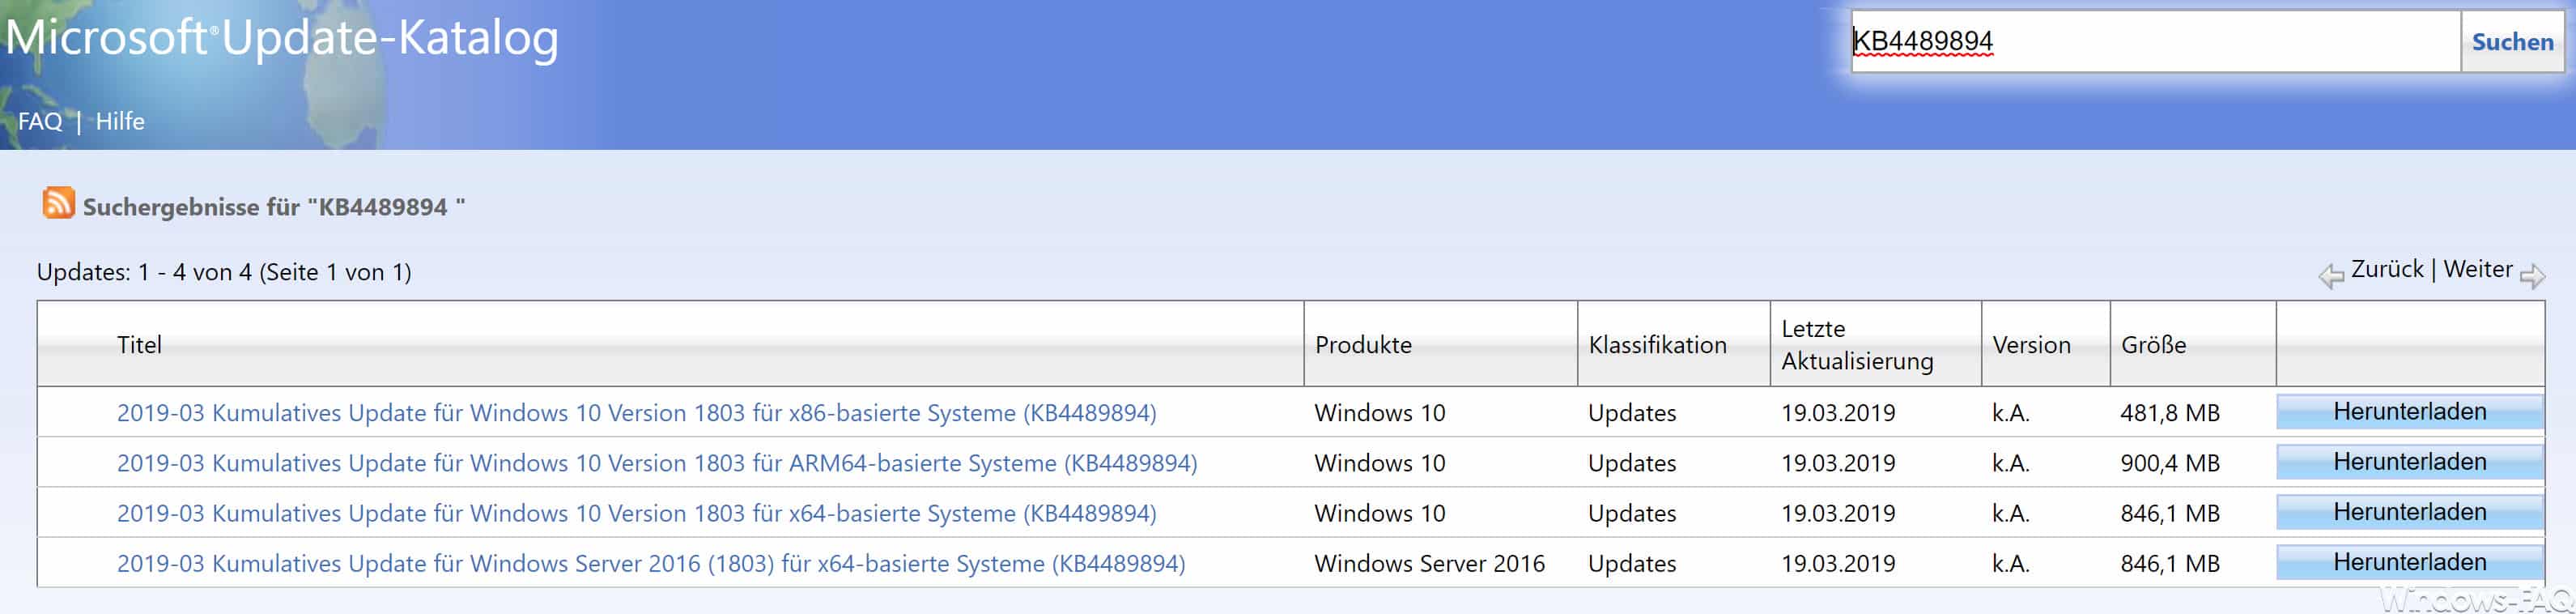 Download KB4489894 für Windows 10 Version 1803 Build 17134.677